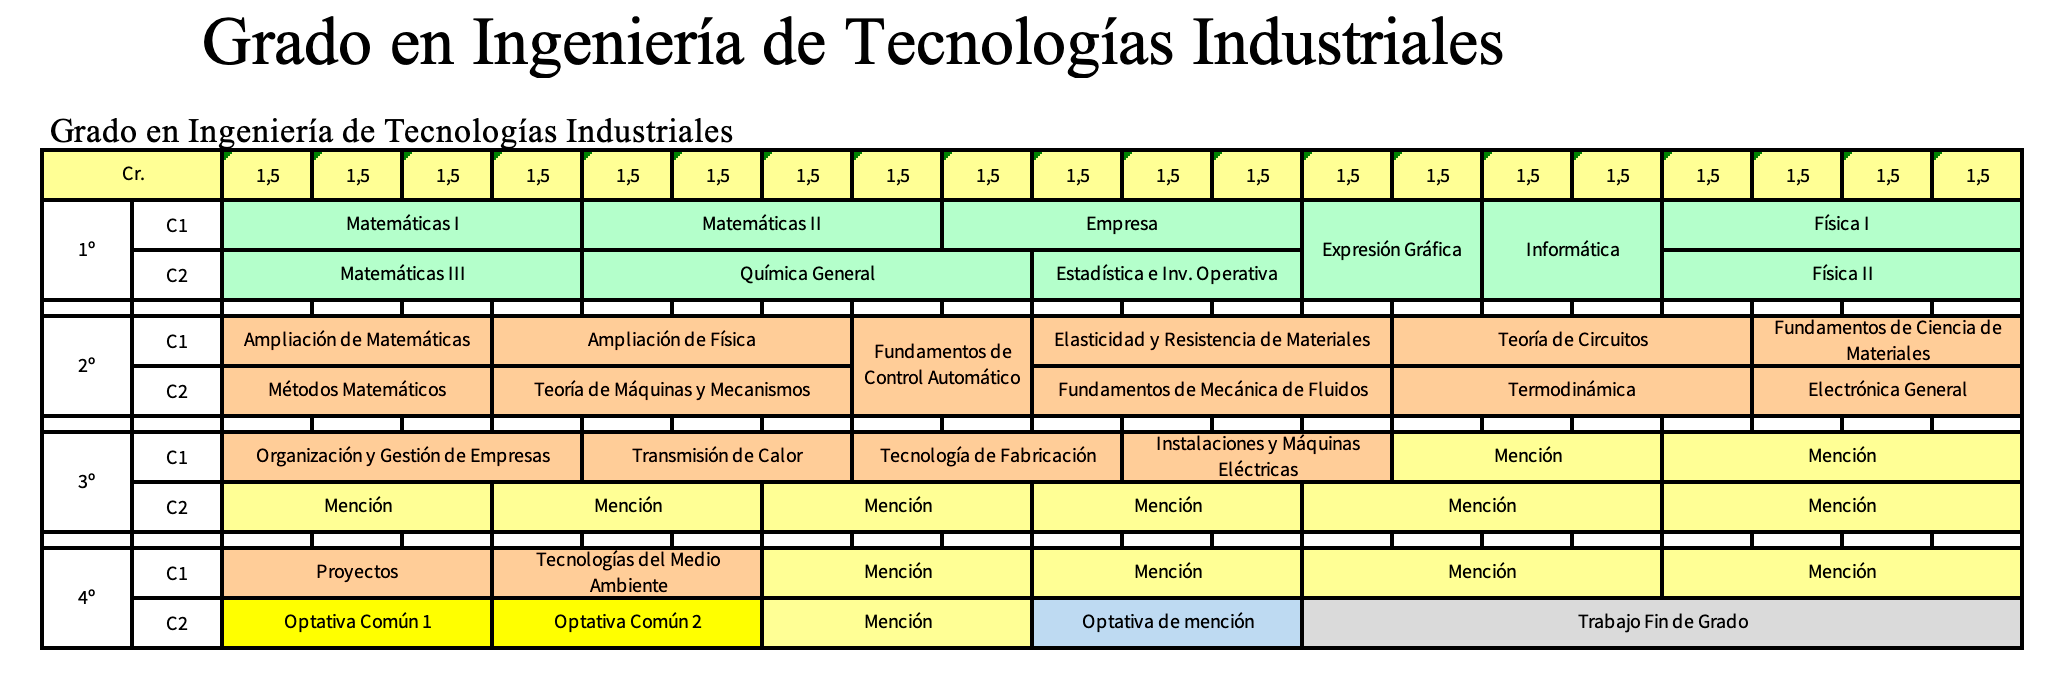 Grado en Ingeniería de la Tecnología Industrial